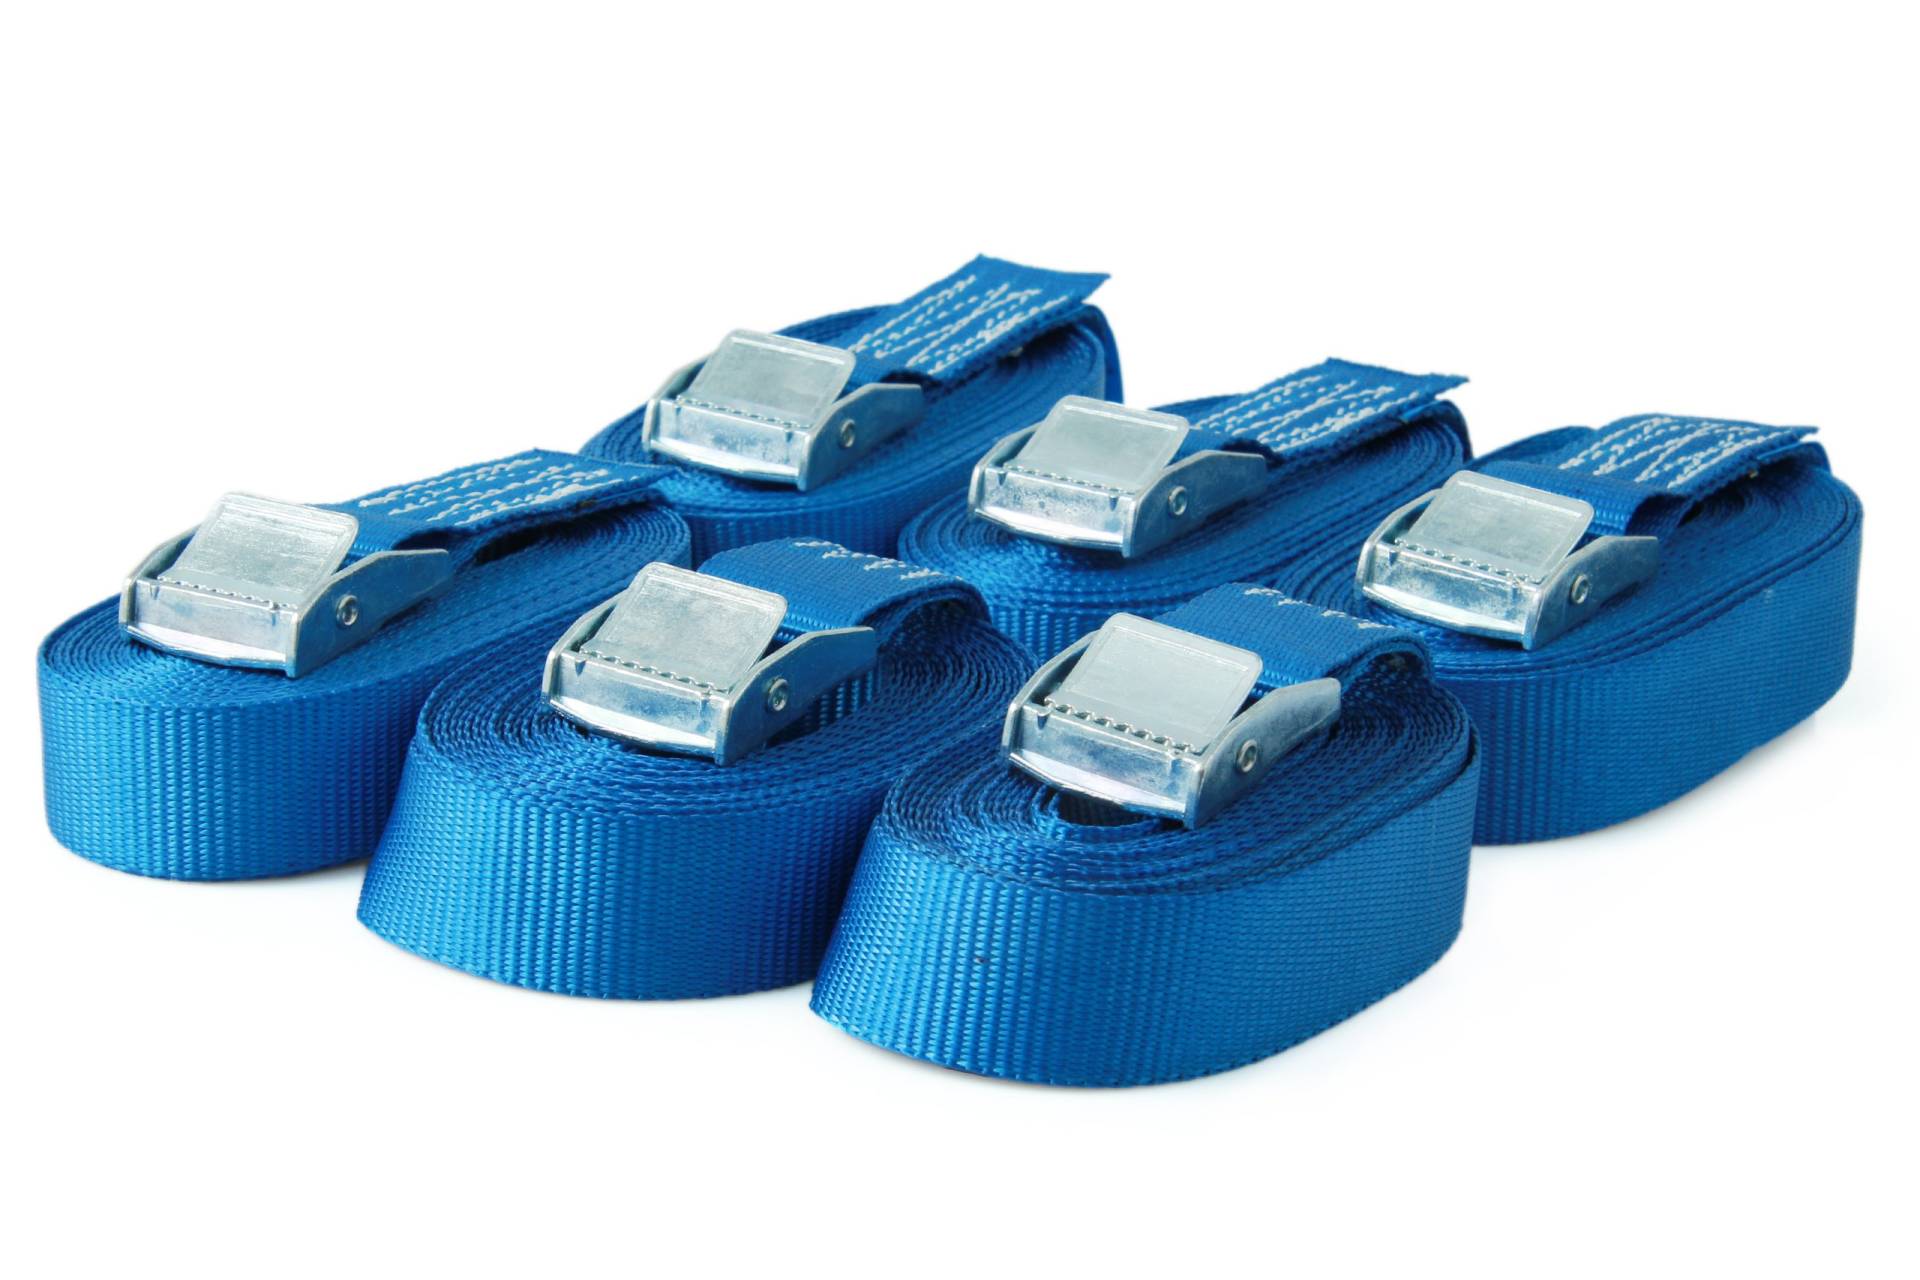 Sandax 6er-Set Spanngurte mit Klemmschloss, Länge 5m, Breite 25mm, Farbe blau, Zurrgurte mit Klemmverschluss, belastbar bis 250kg, nach DIN EN 12195-2, Einteilige hochwertige Klemmschlossgurte von Sandax